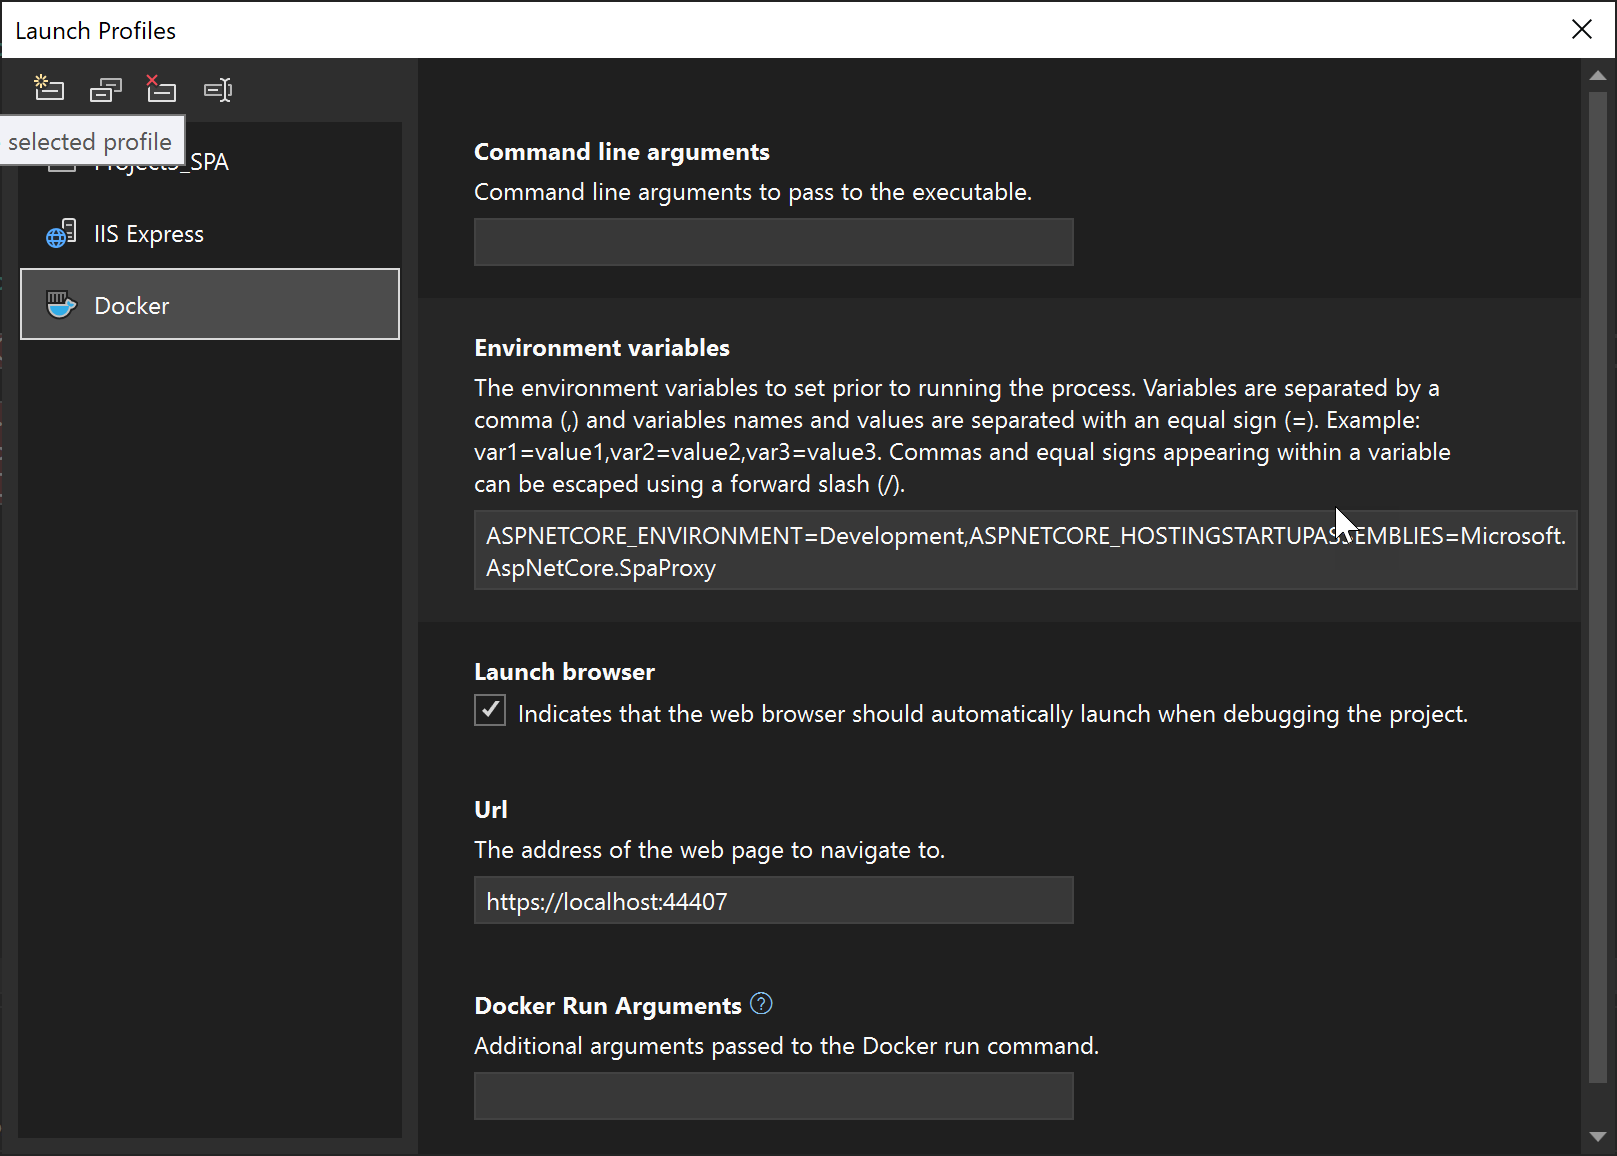 Captura de tela das configurações de Perfil de Inicialização de Depuração para depuração do cliente.